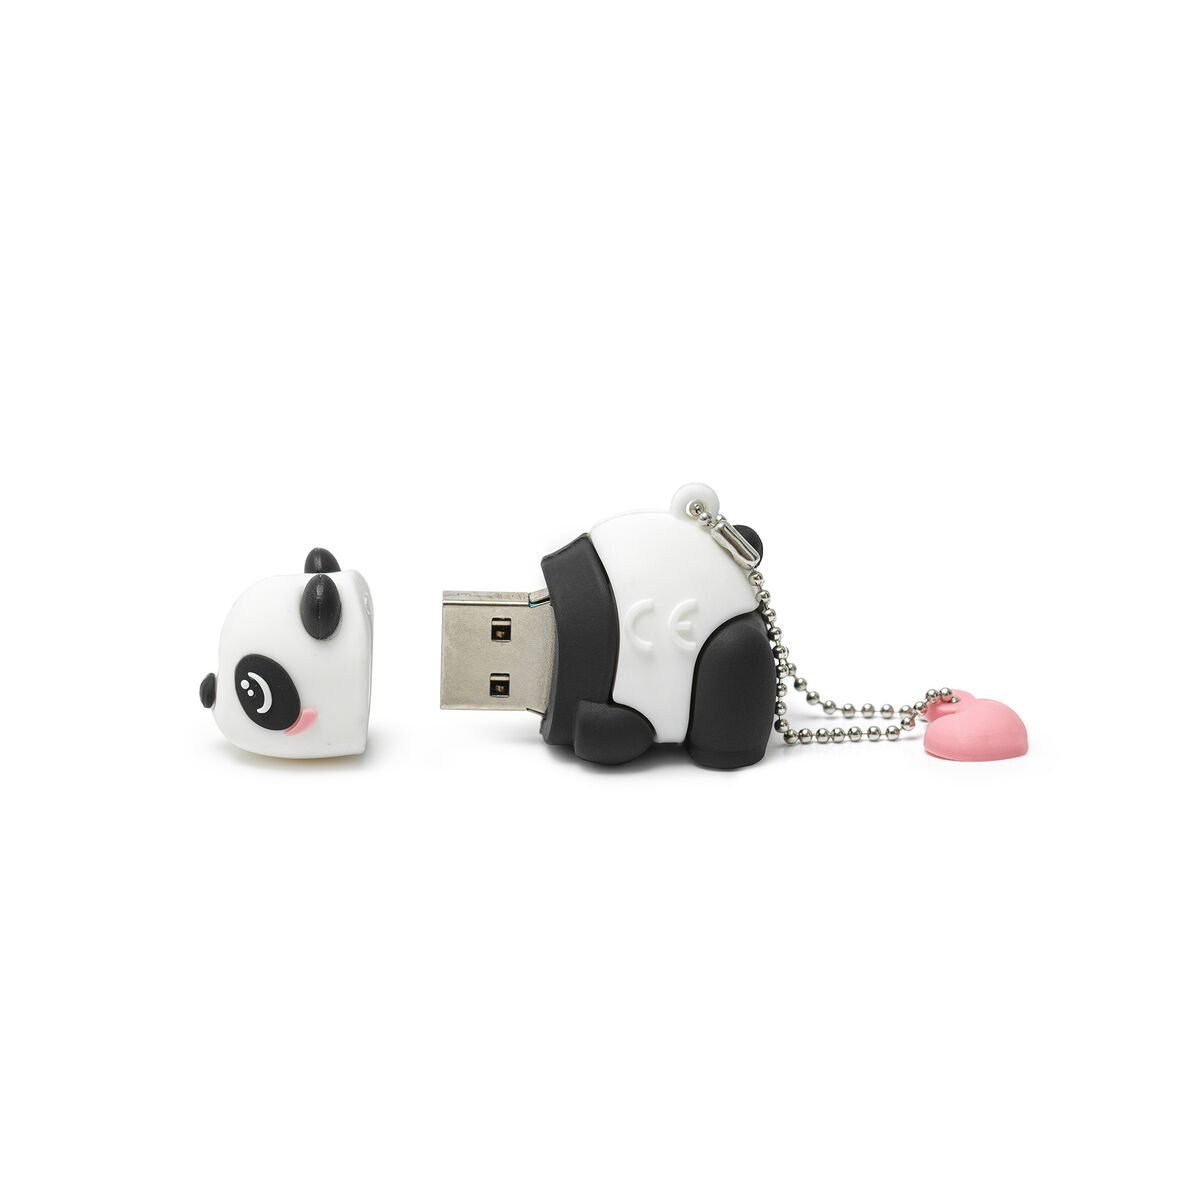 Clé USB ANT+ - Add-One